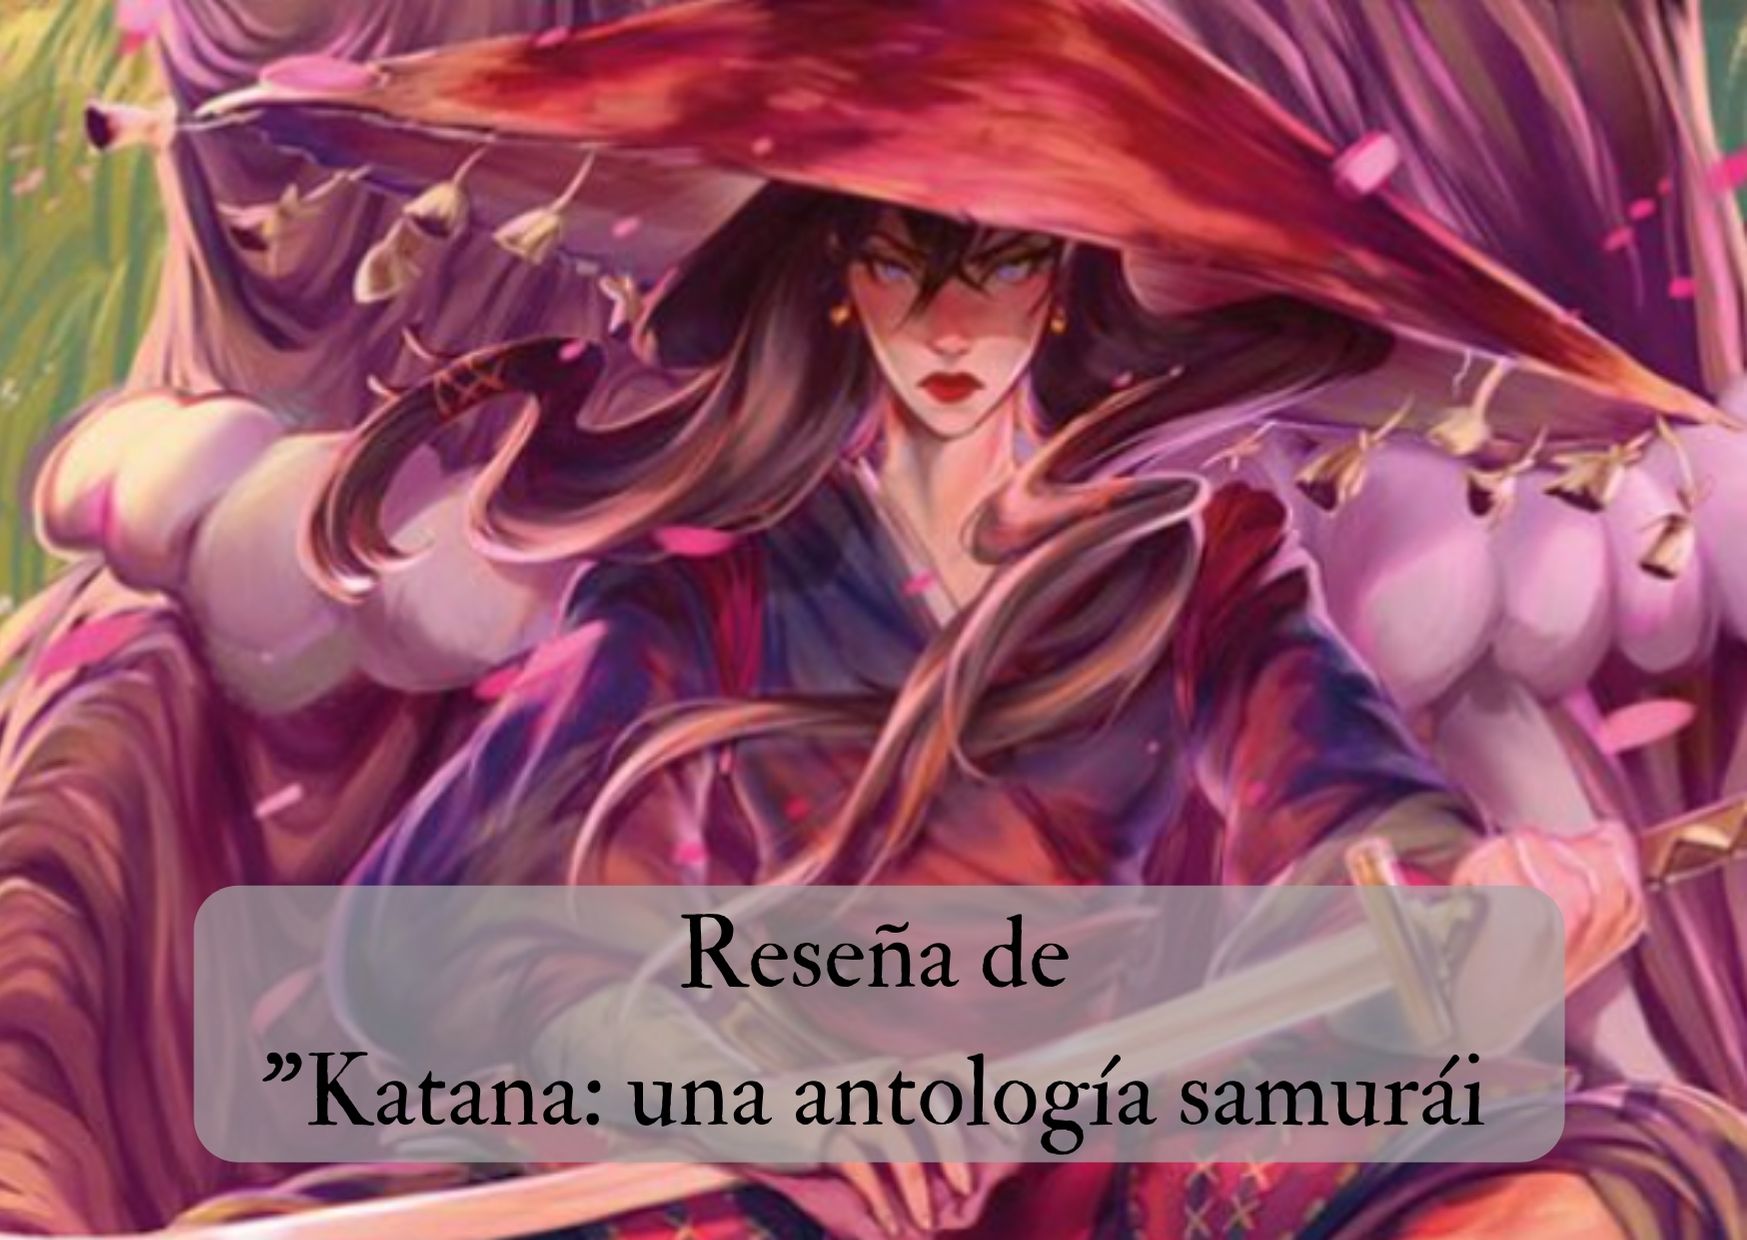 Reseña de “Katana: una antología samurái”